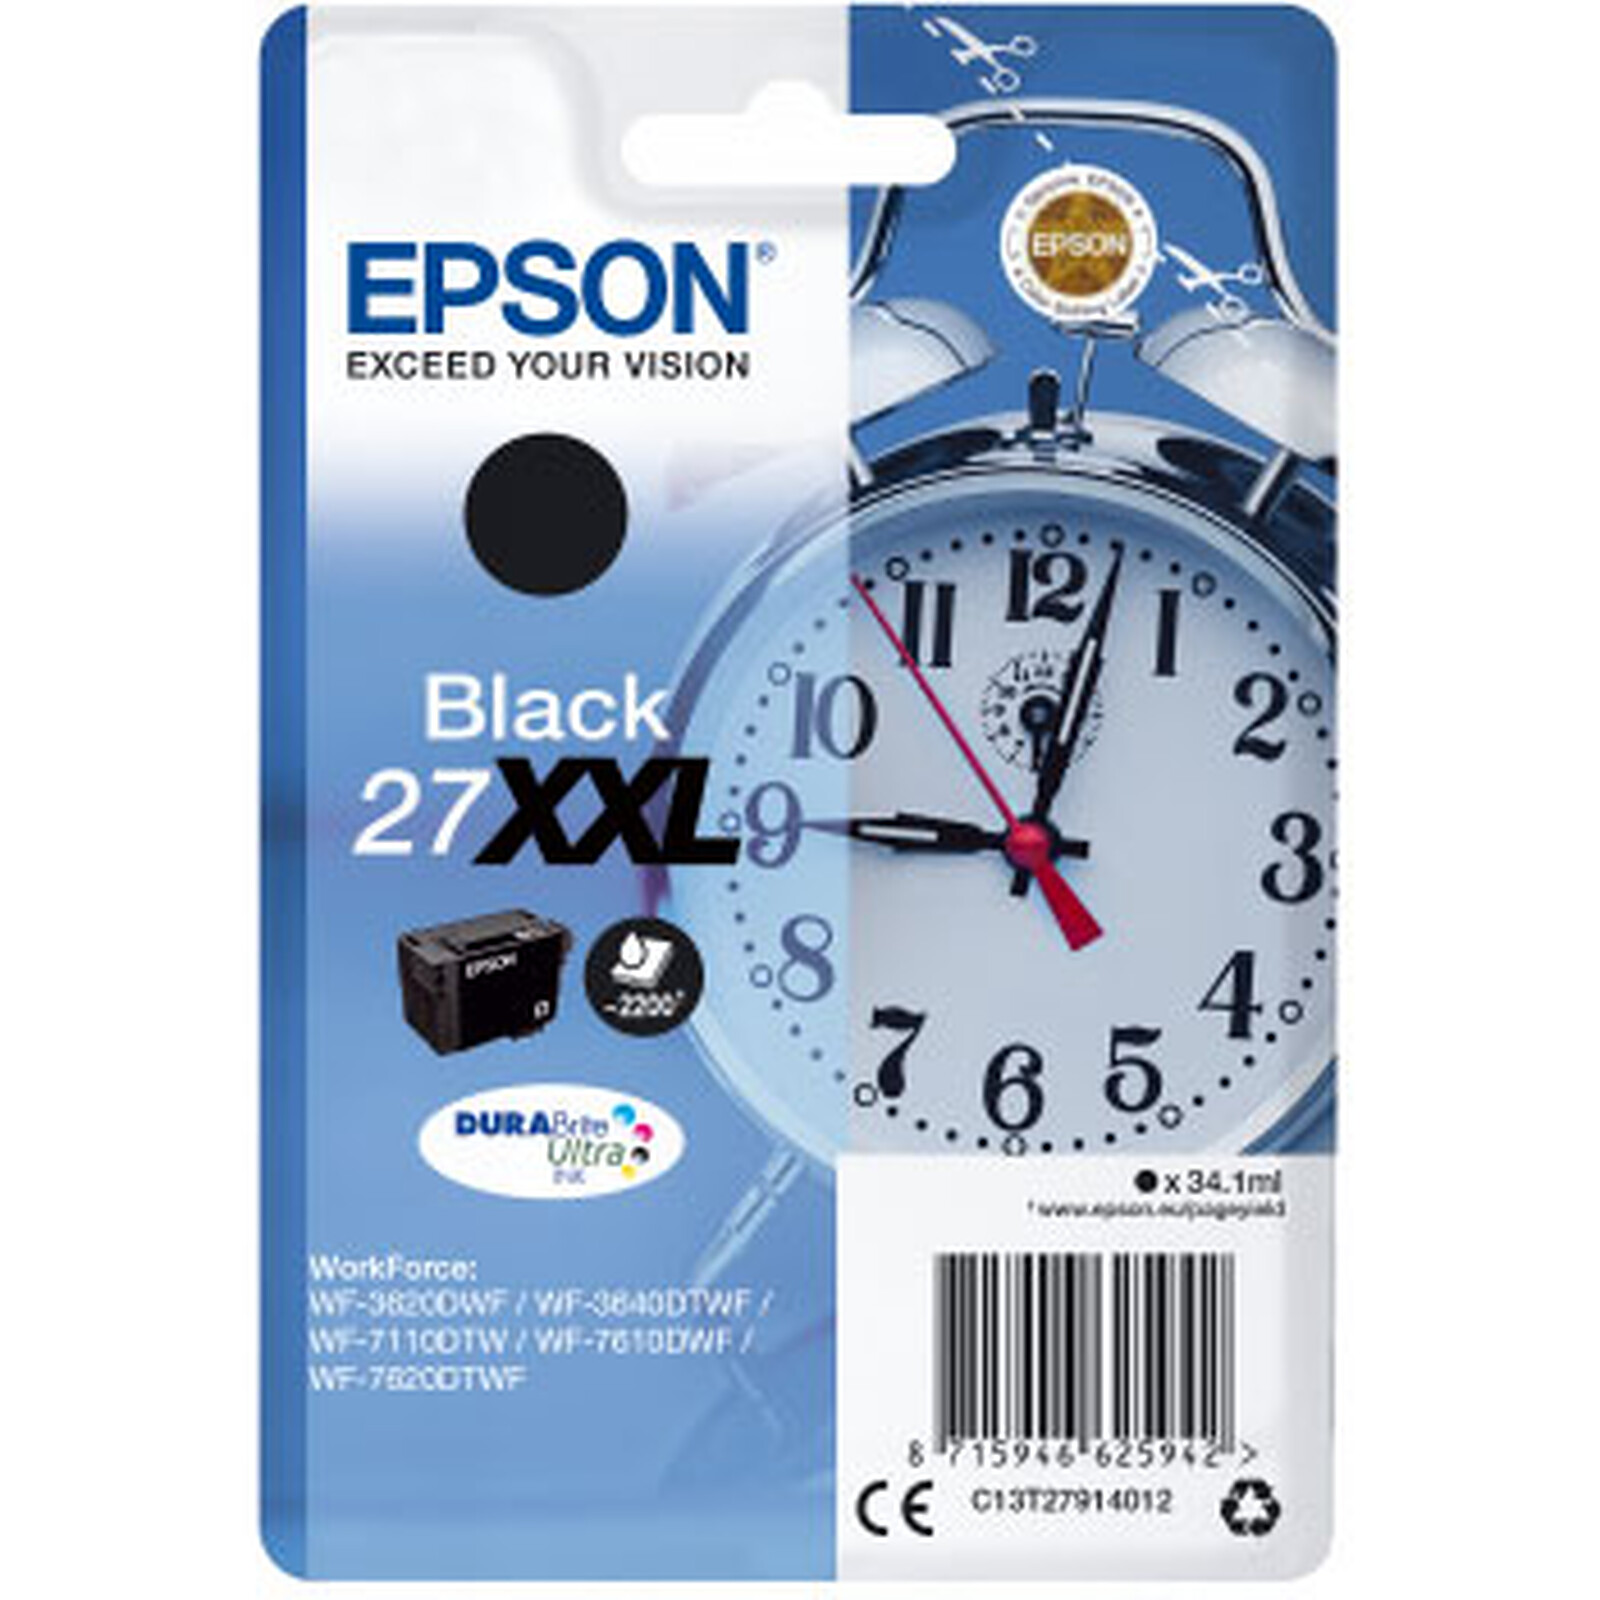 Cartouche d'encre Epson 604XL magenta - Cartouche encre compatible Epson 604  XL - Ananas - GRANDE CAPACITE